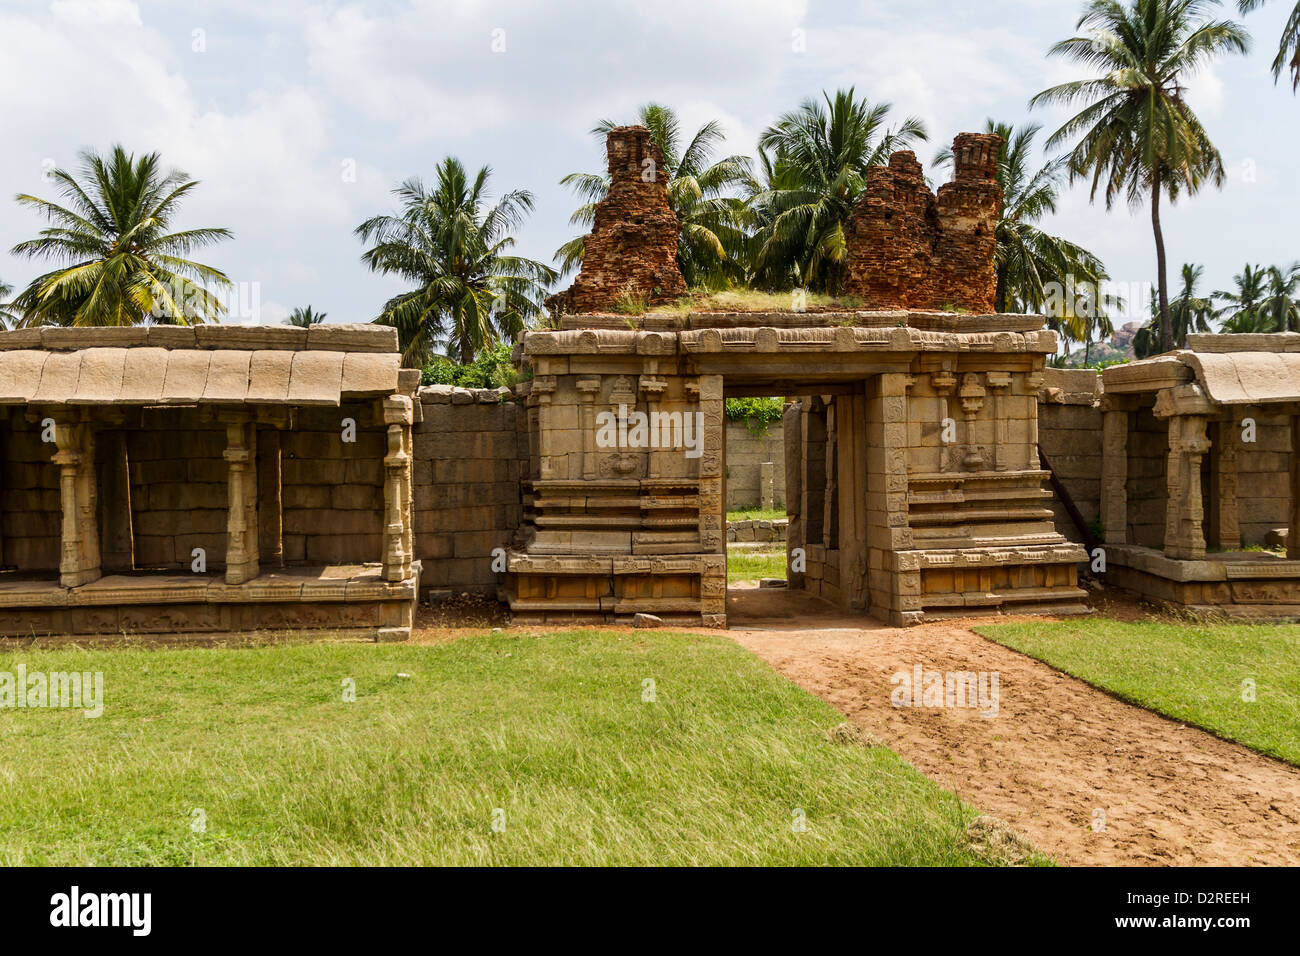 También conocido como el Templo de Tiruvengalanatha Achyutaraya Temple está situado a los pies de la colina de Matang, Hampi, India Foto de stock